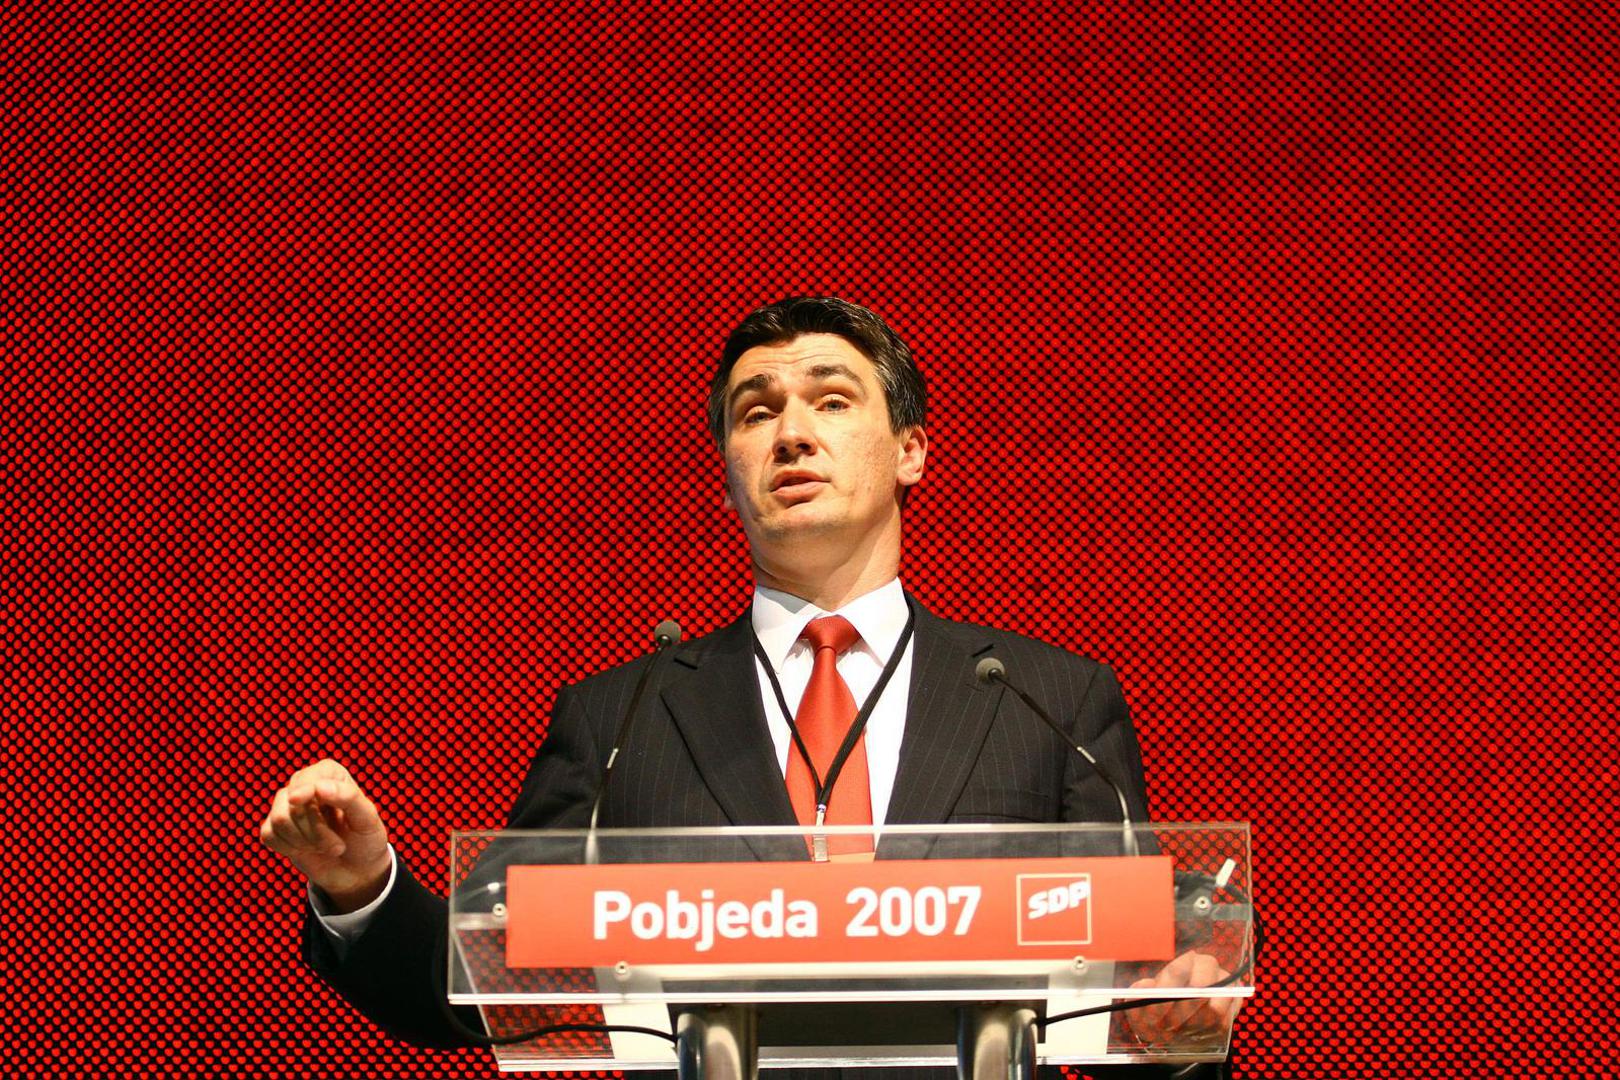 Nakon smrti Ivice Račana, Milanović 2007. postaje predsjednik SDP-a